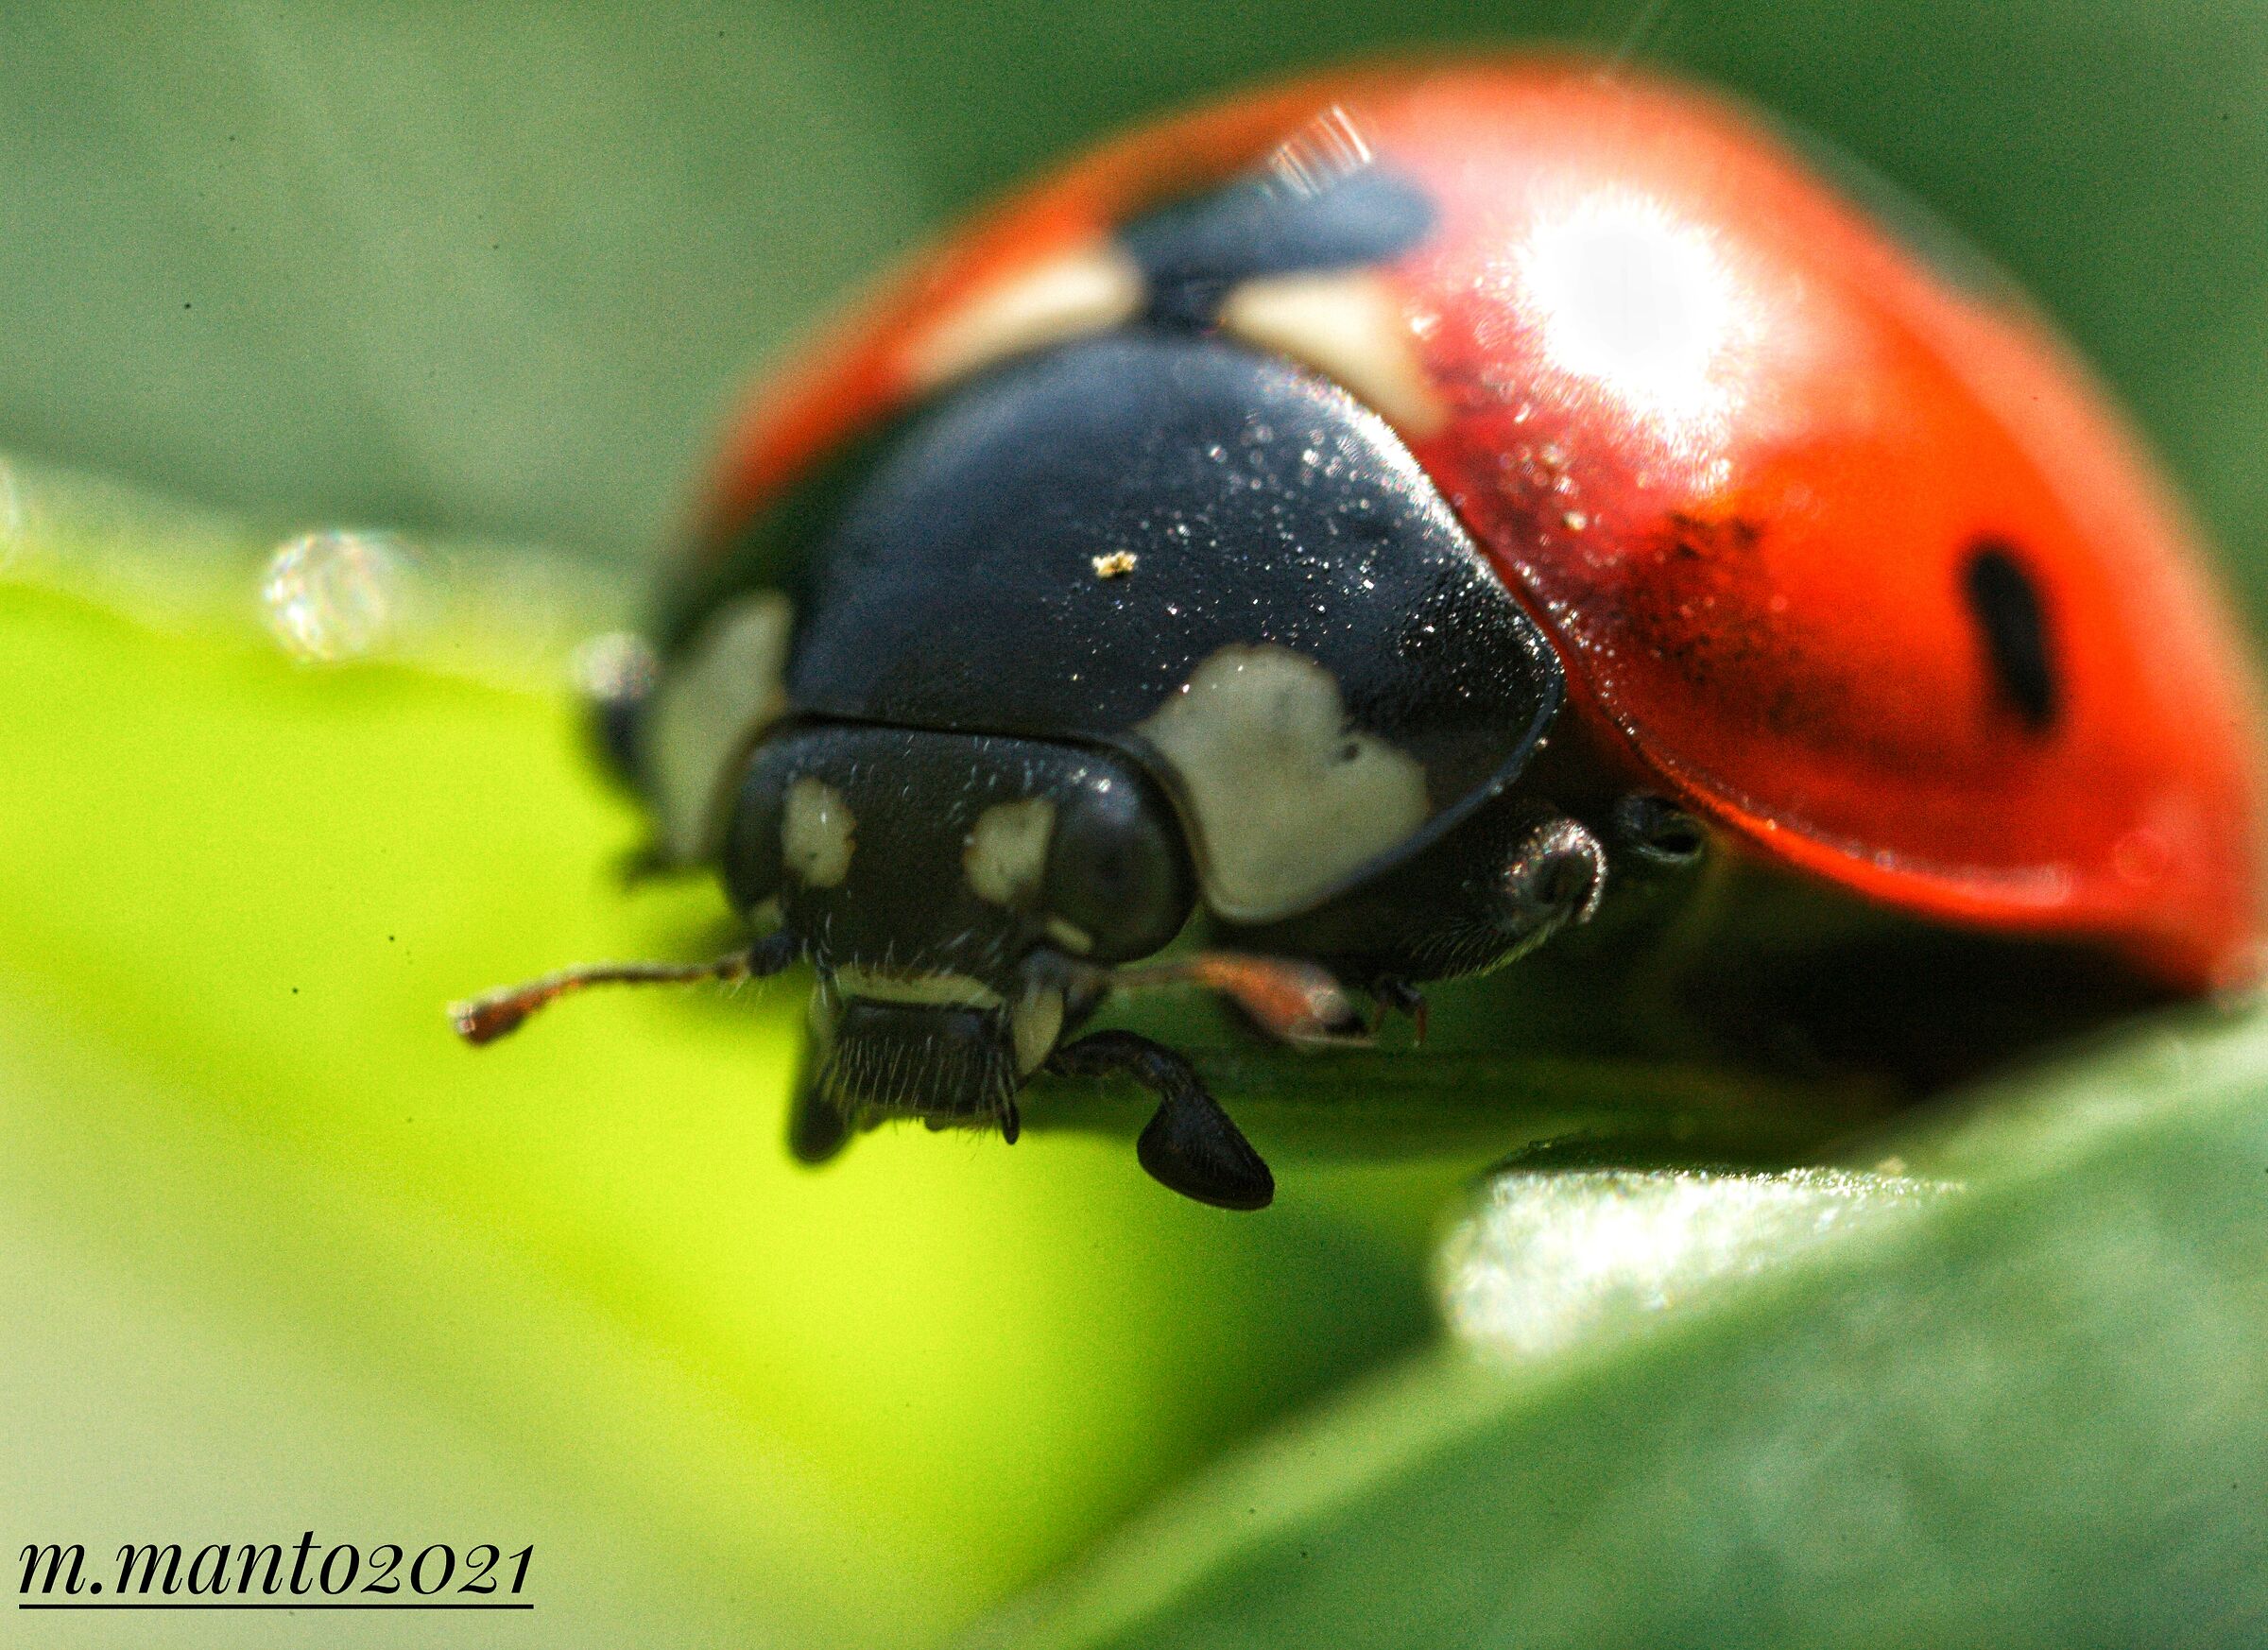 The Ladybug ...